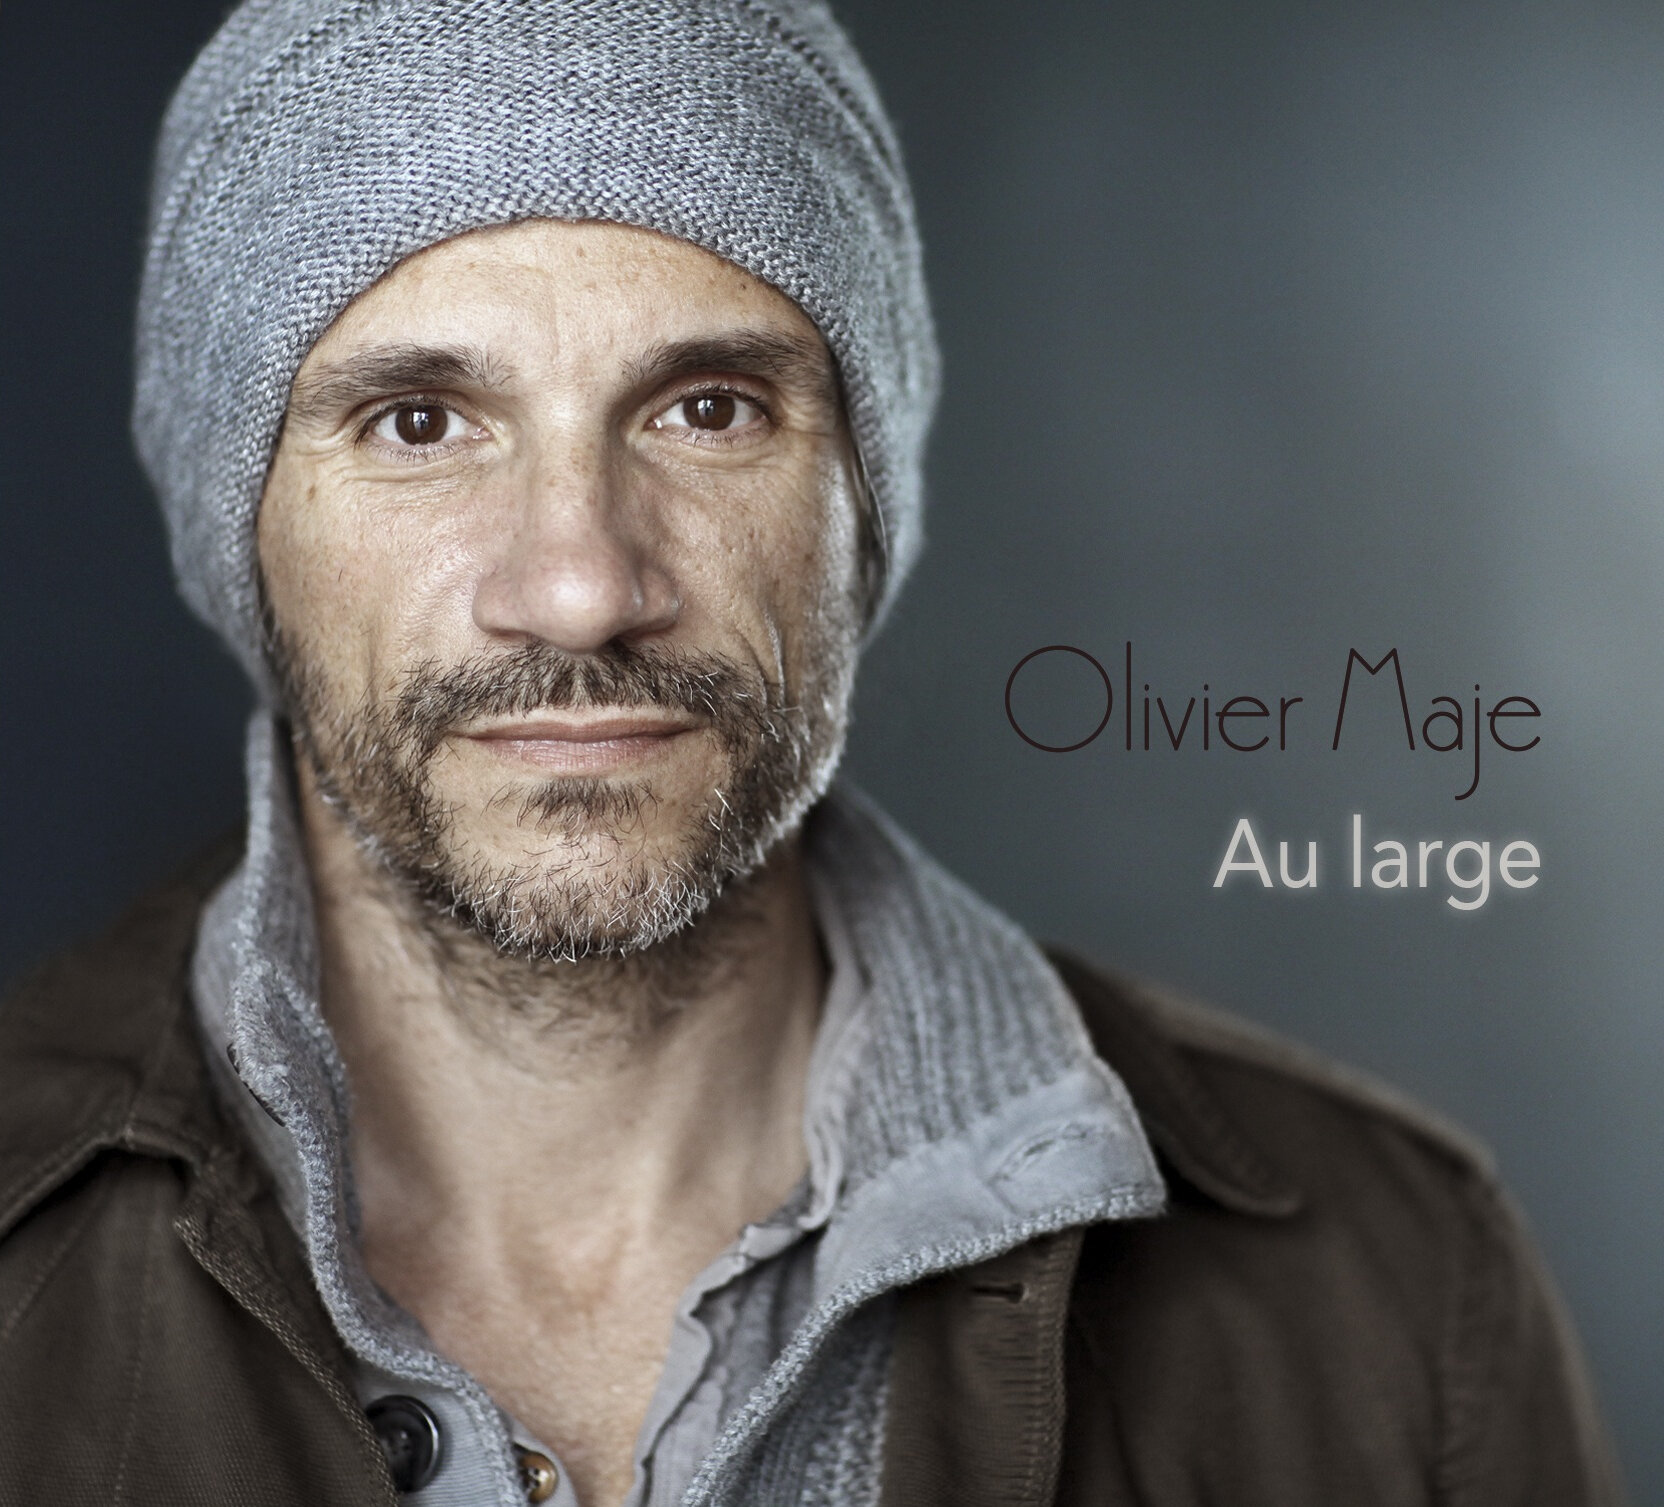 Pochette album Olivier Maje.jpg